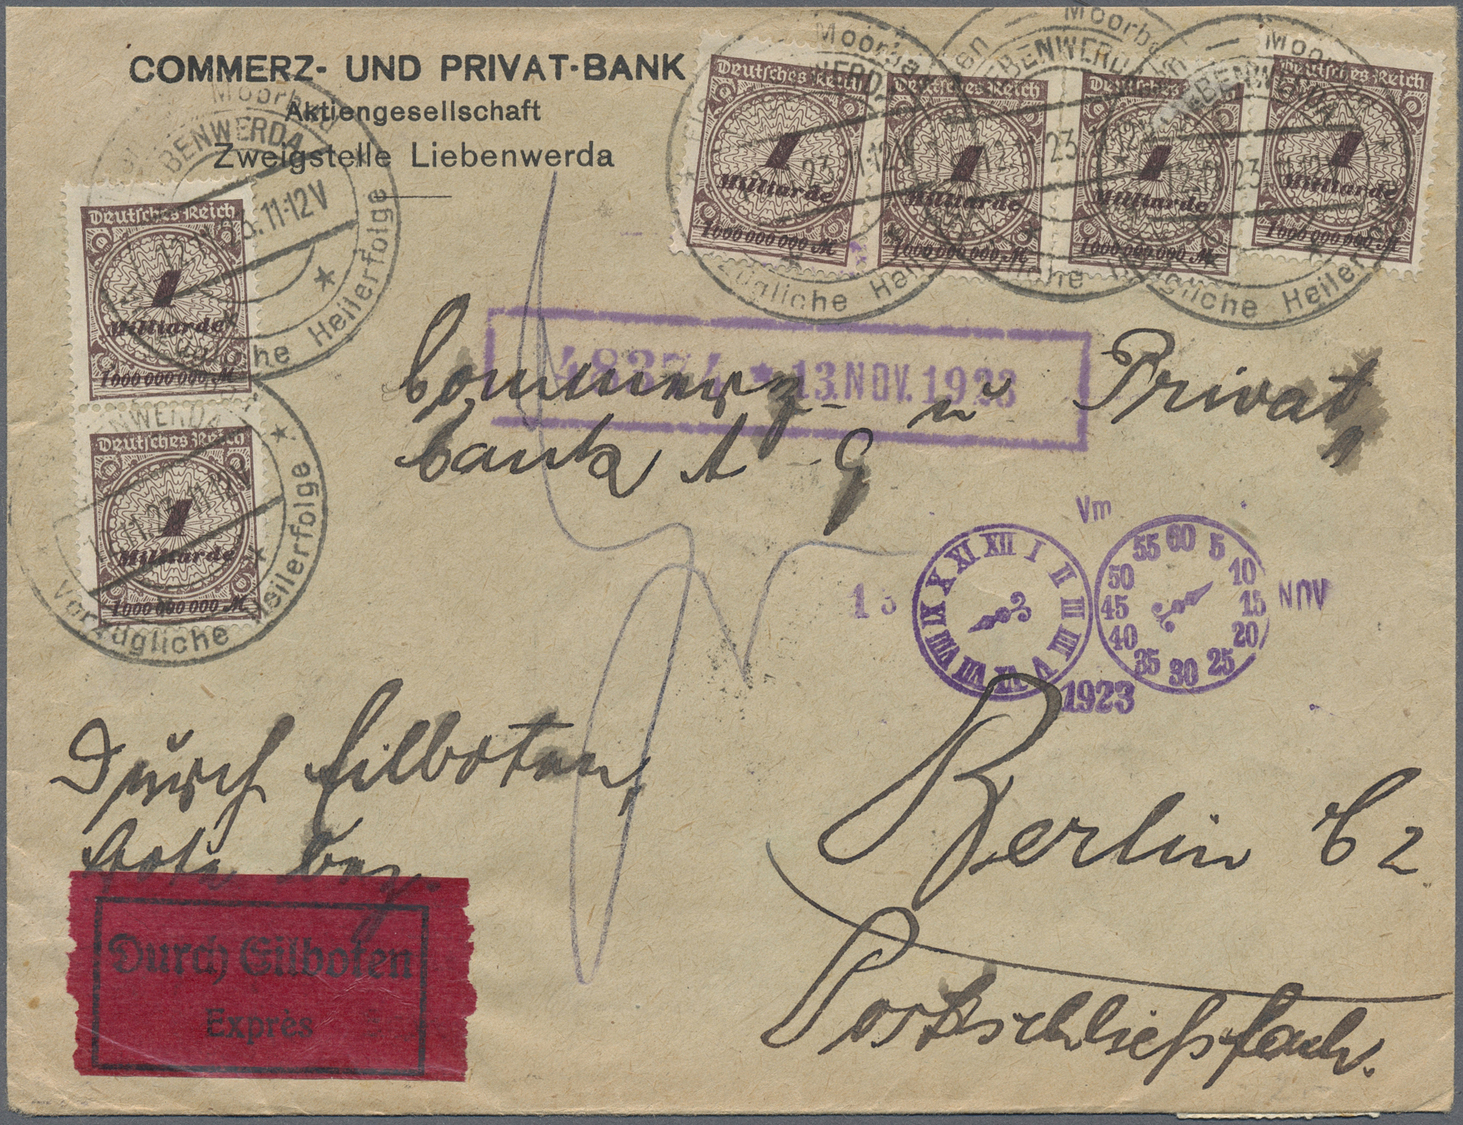 GA/Br/ Deutschland: 1916 - 1952 (ca.), umfangreicher Bestand von über 580 Belegen, dabei Massenfrankaturen,